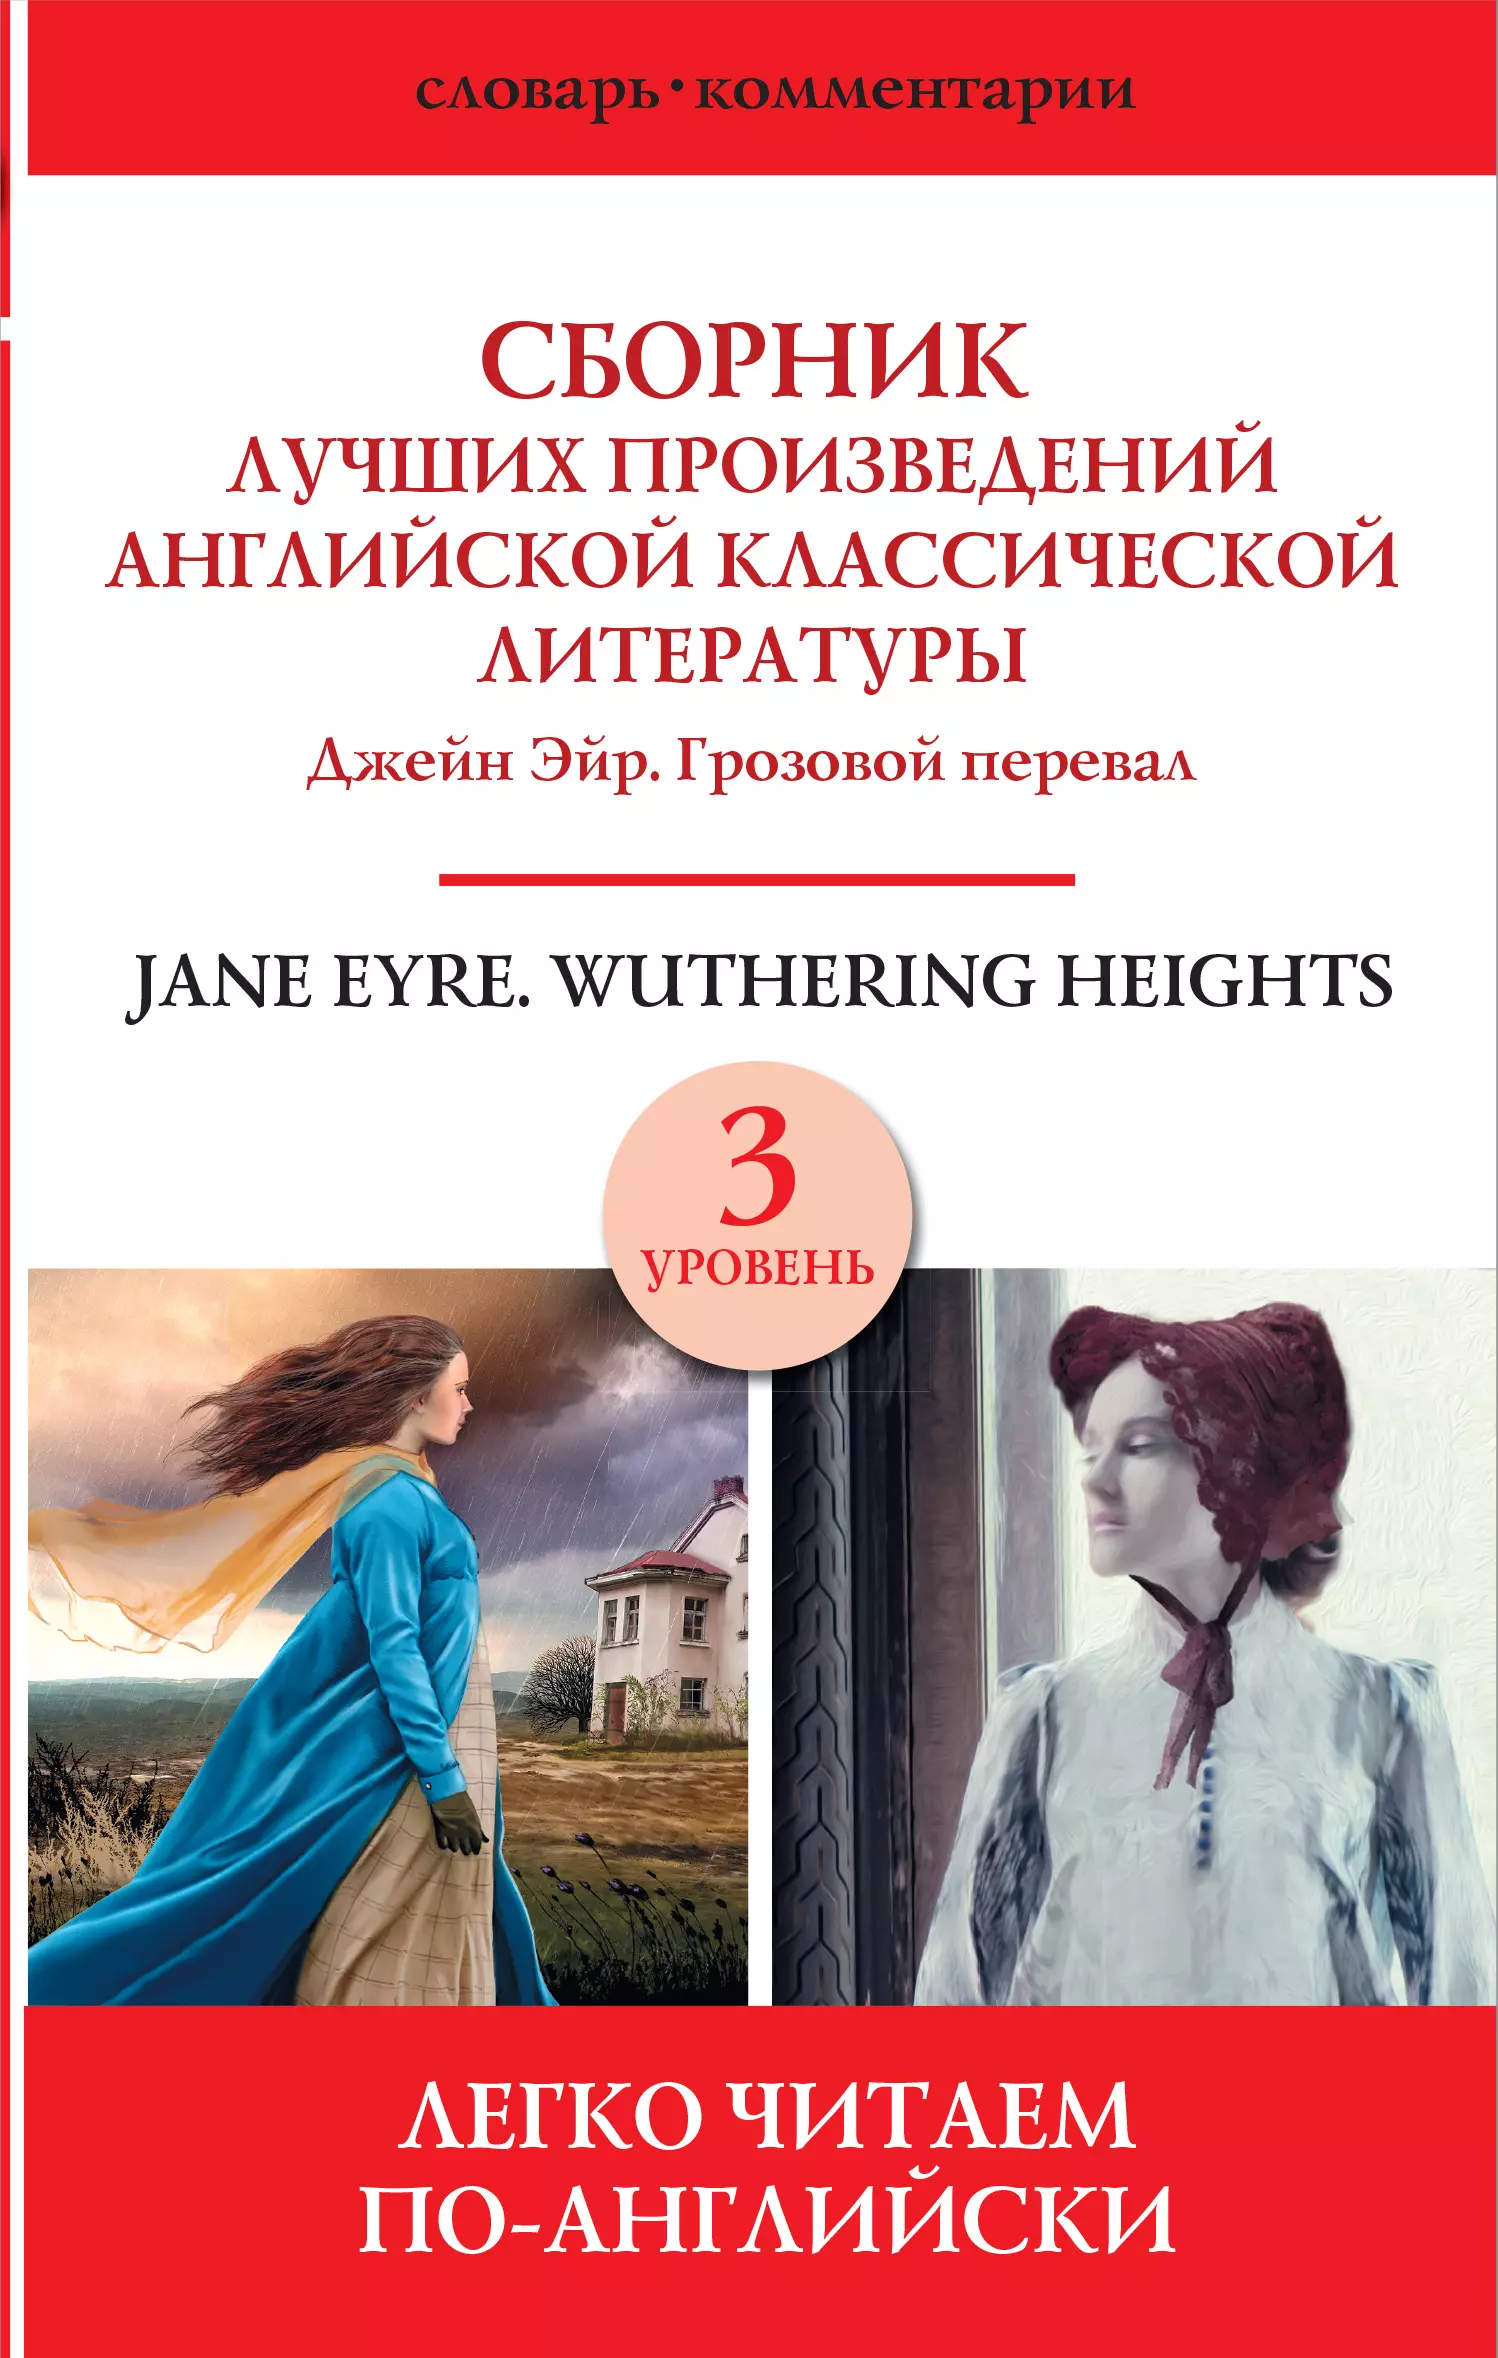  - Jane Eyre. Wuthering heights / Сборник лучших произведений английской классической литературы. Джейн Эйр. Грозовой перевал. Уровень 3